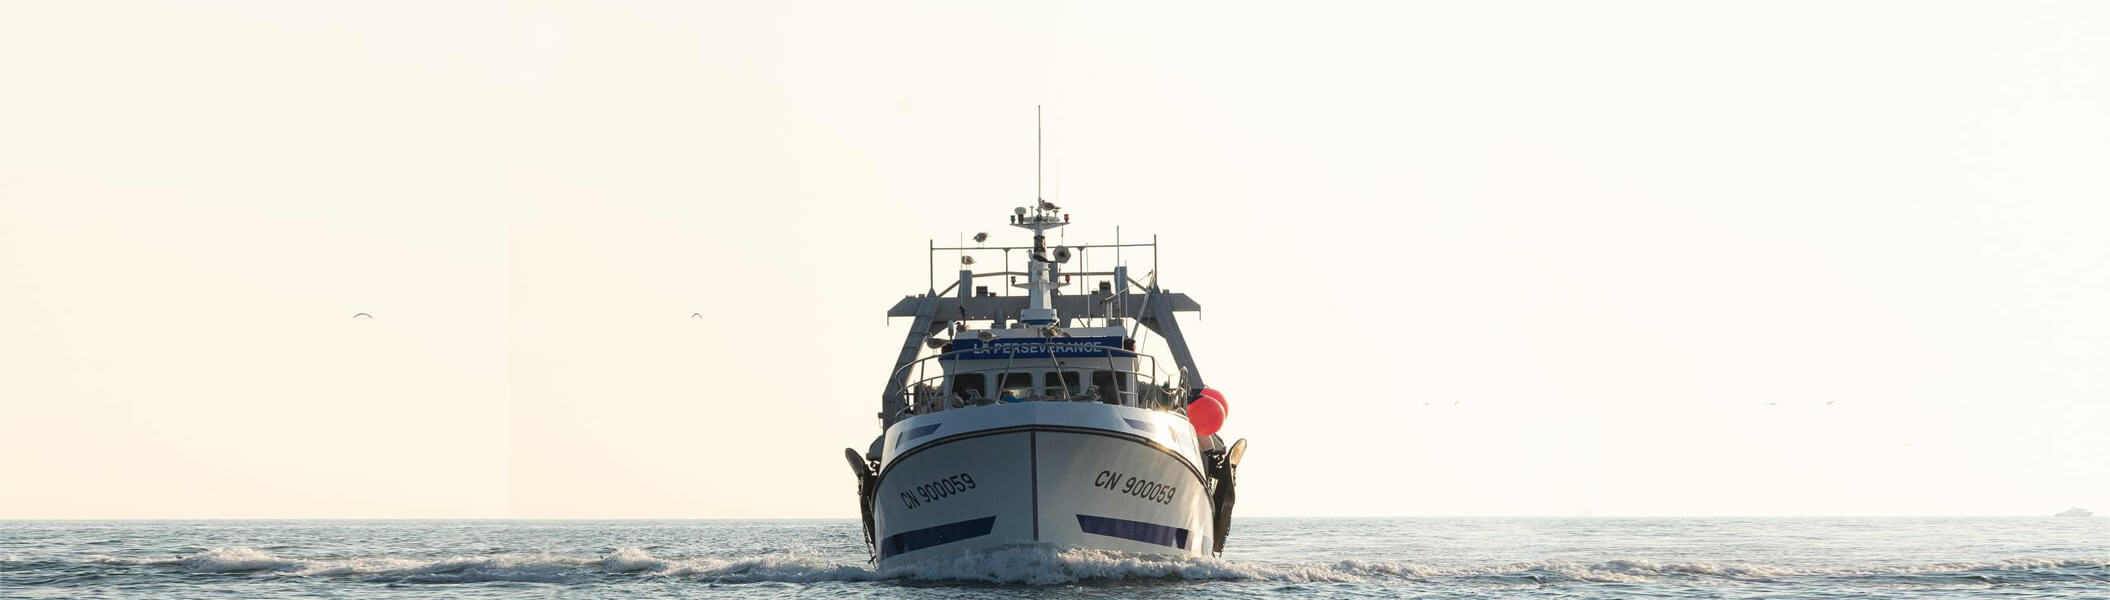 chalutier de peche-La Perseverance-bateau qui navigue dans la Manche et Calvados-vue de face